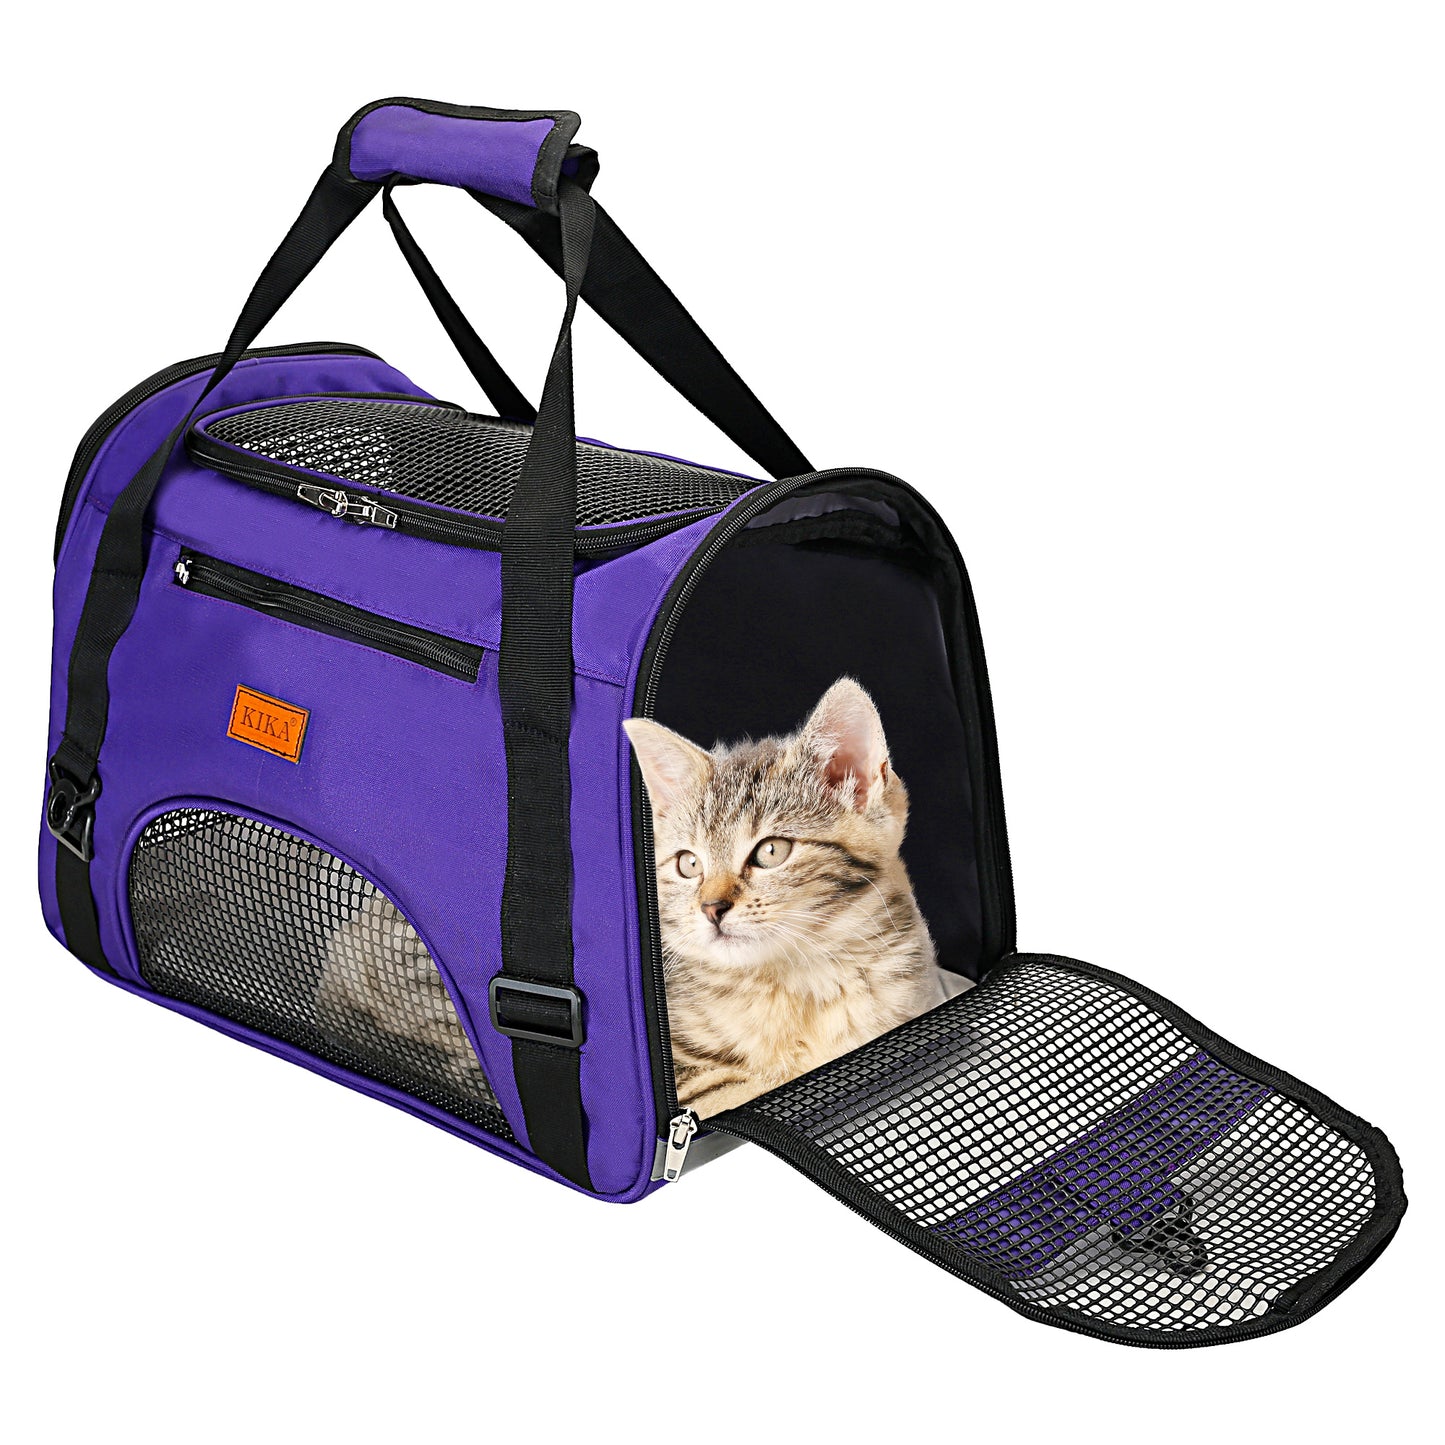 KIKA Pets AIRLINE Cat Carrier Bag, violet color